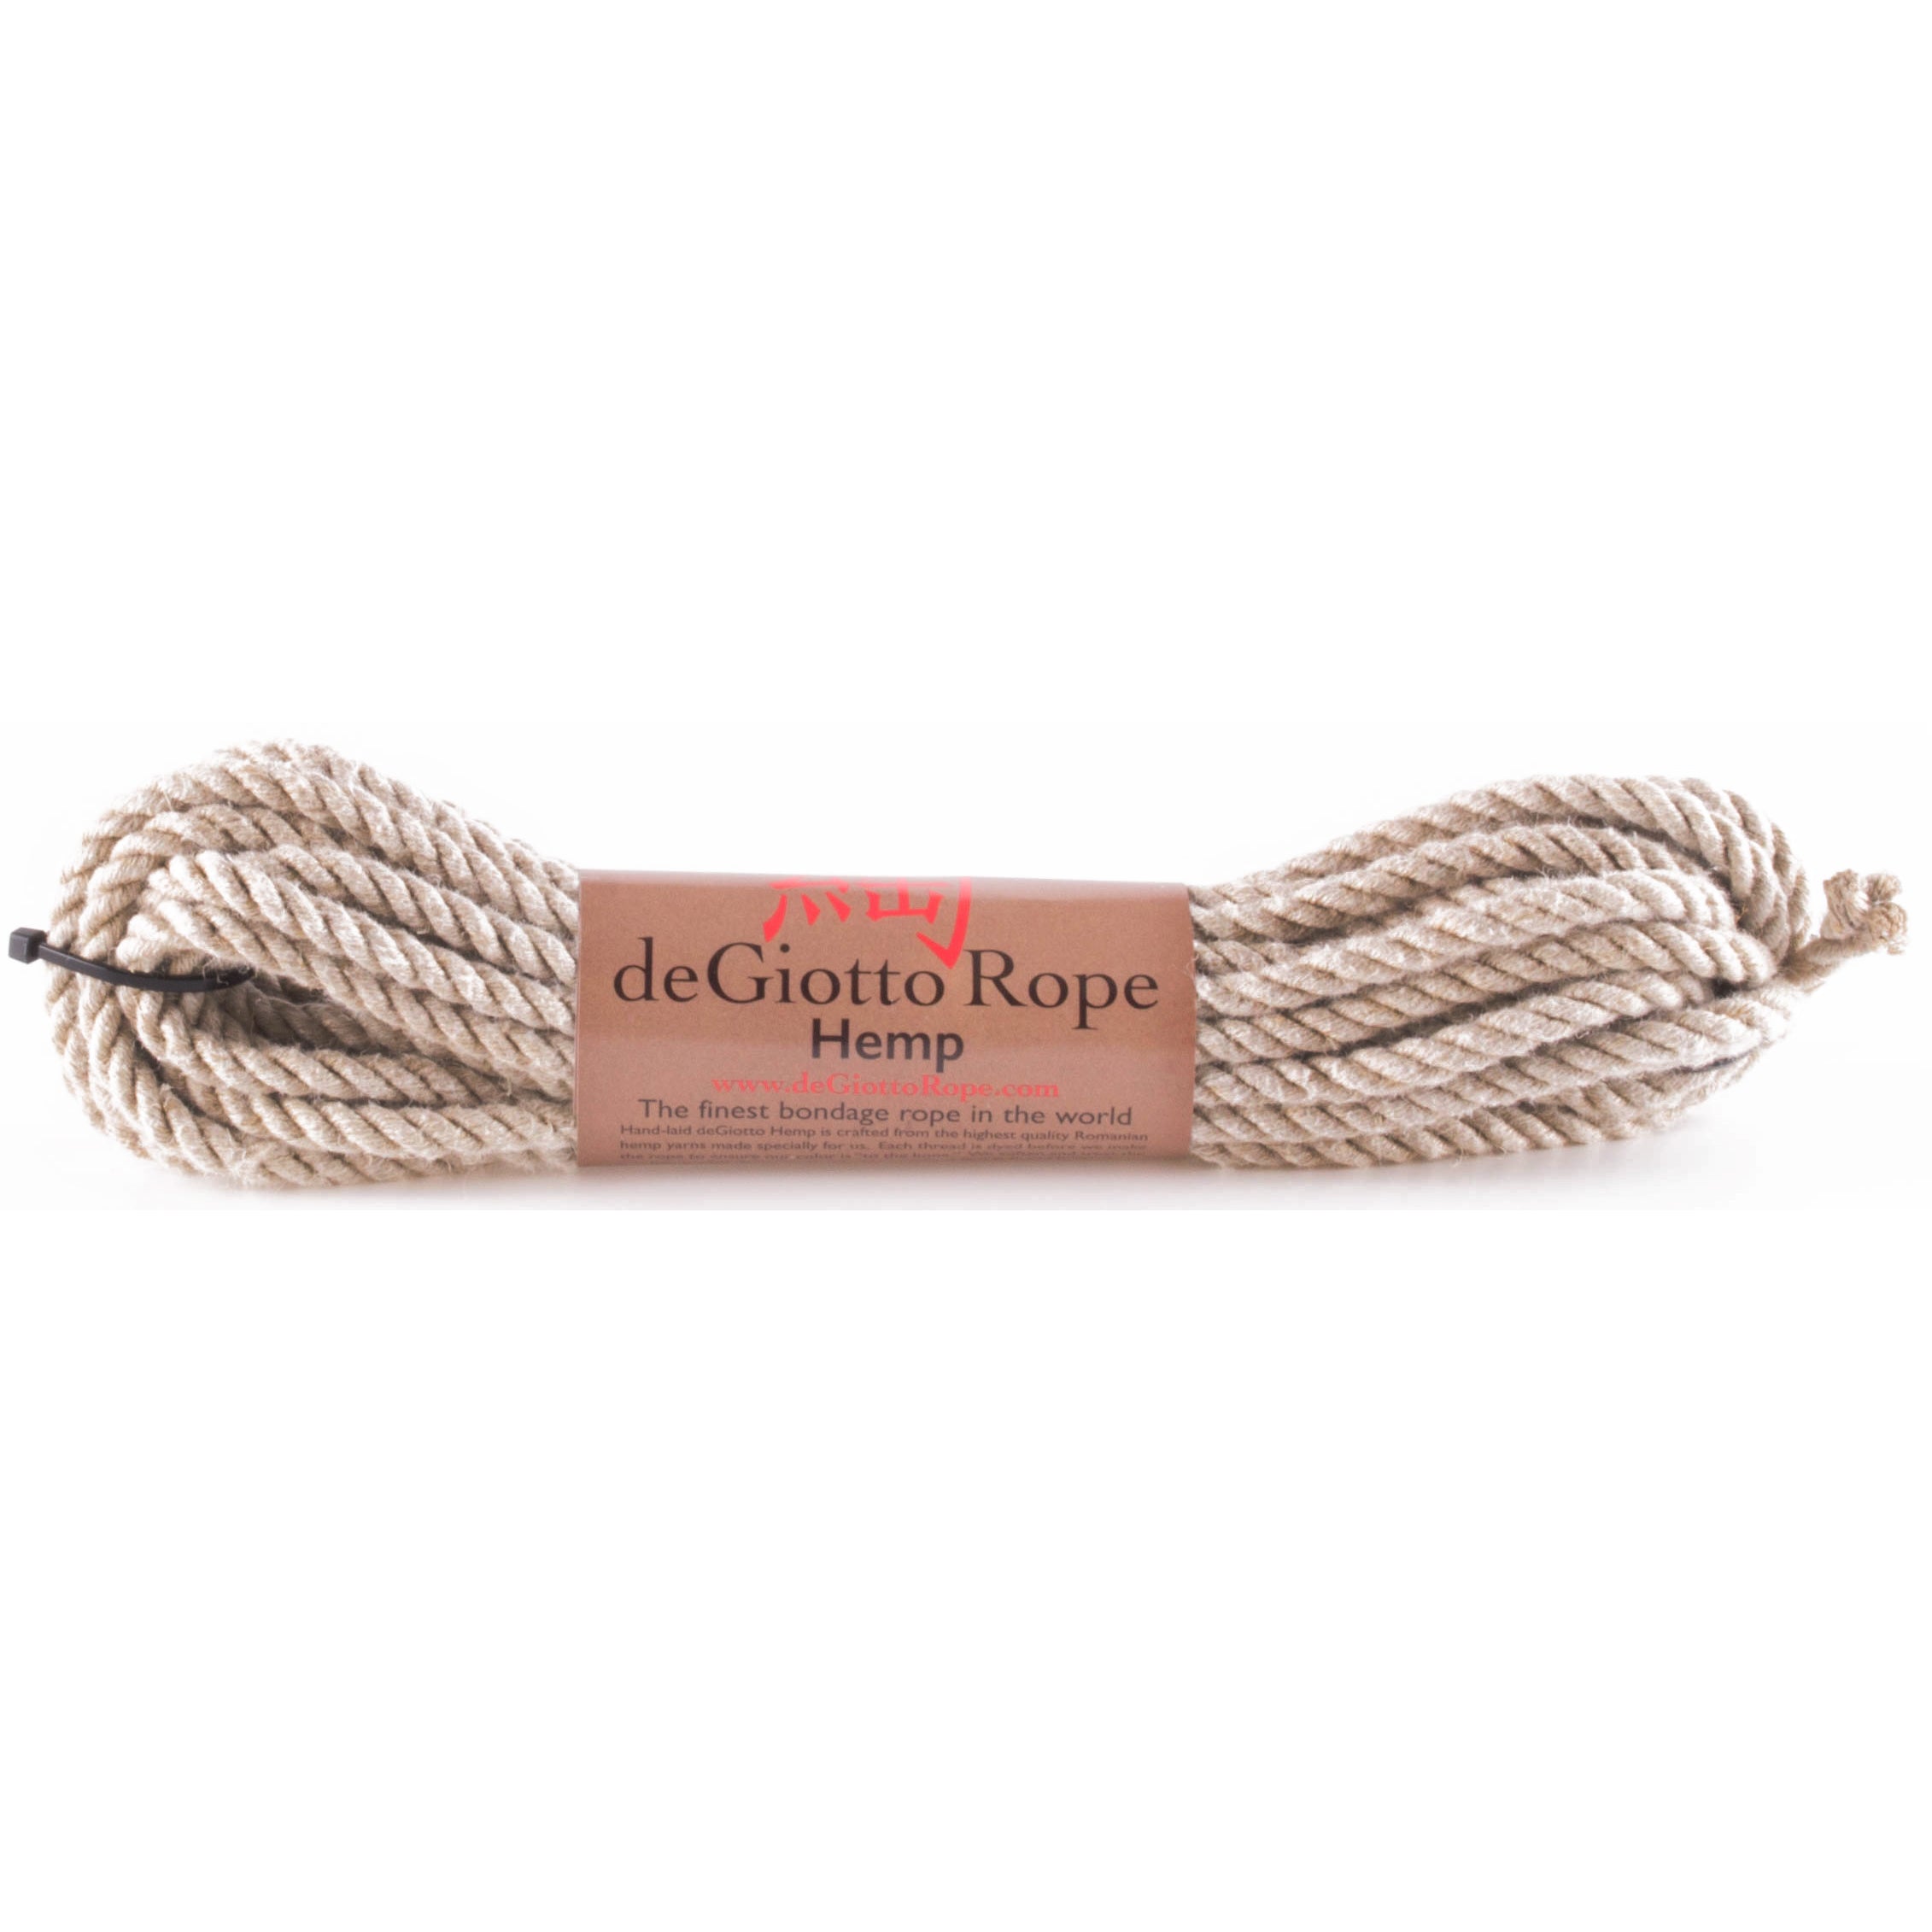 Hemp Shibari Rope Bare bones Kit 4x30' – deGiotto Rope